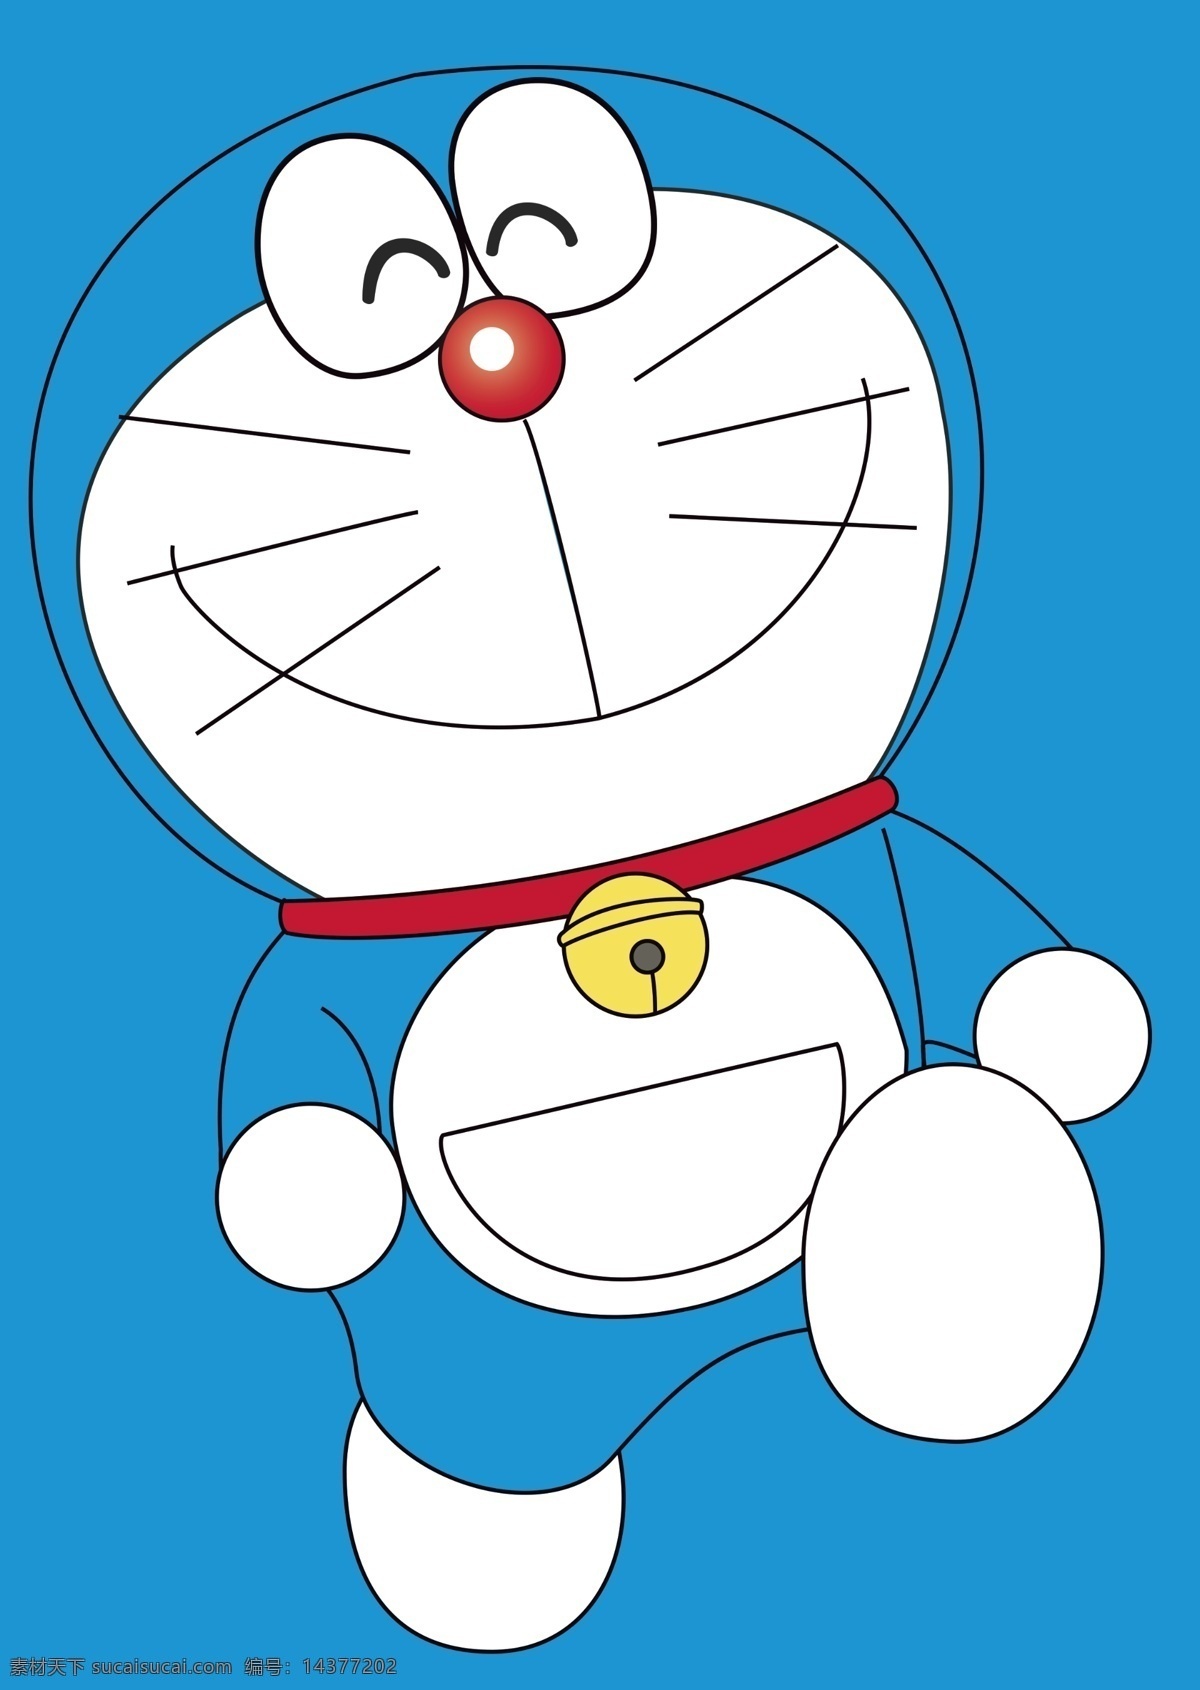 多啦a梦 来自未来 机器猫 可爱 活动 口袋任意门 钢笔画 动漫动画 动漫人物